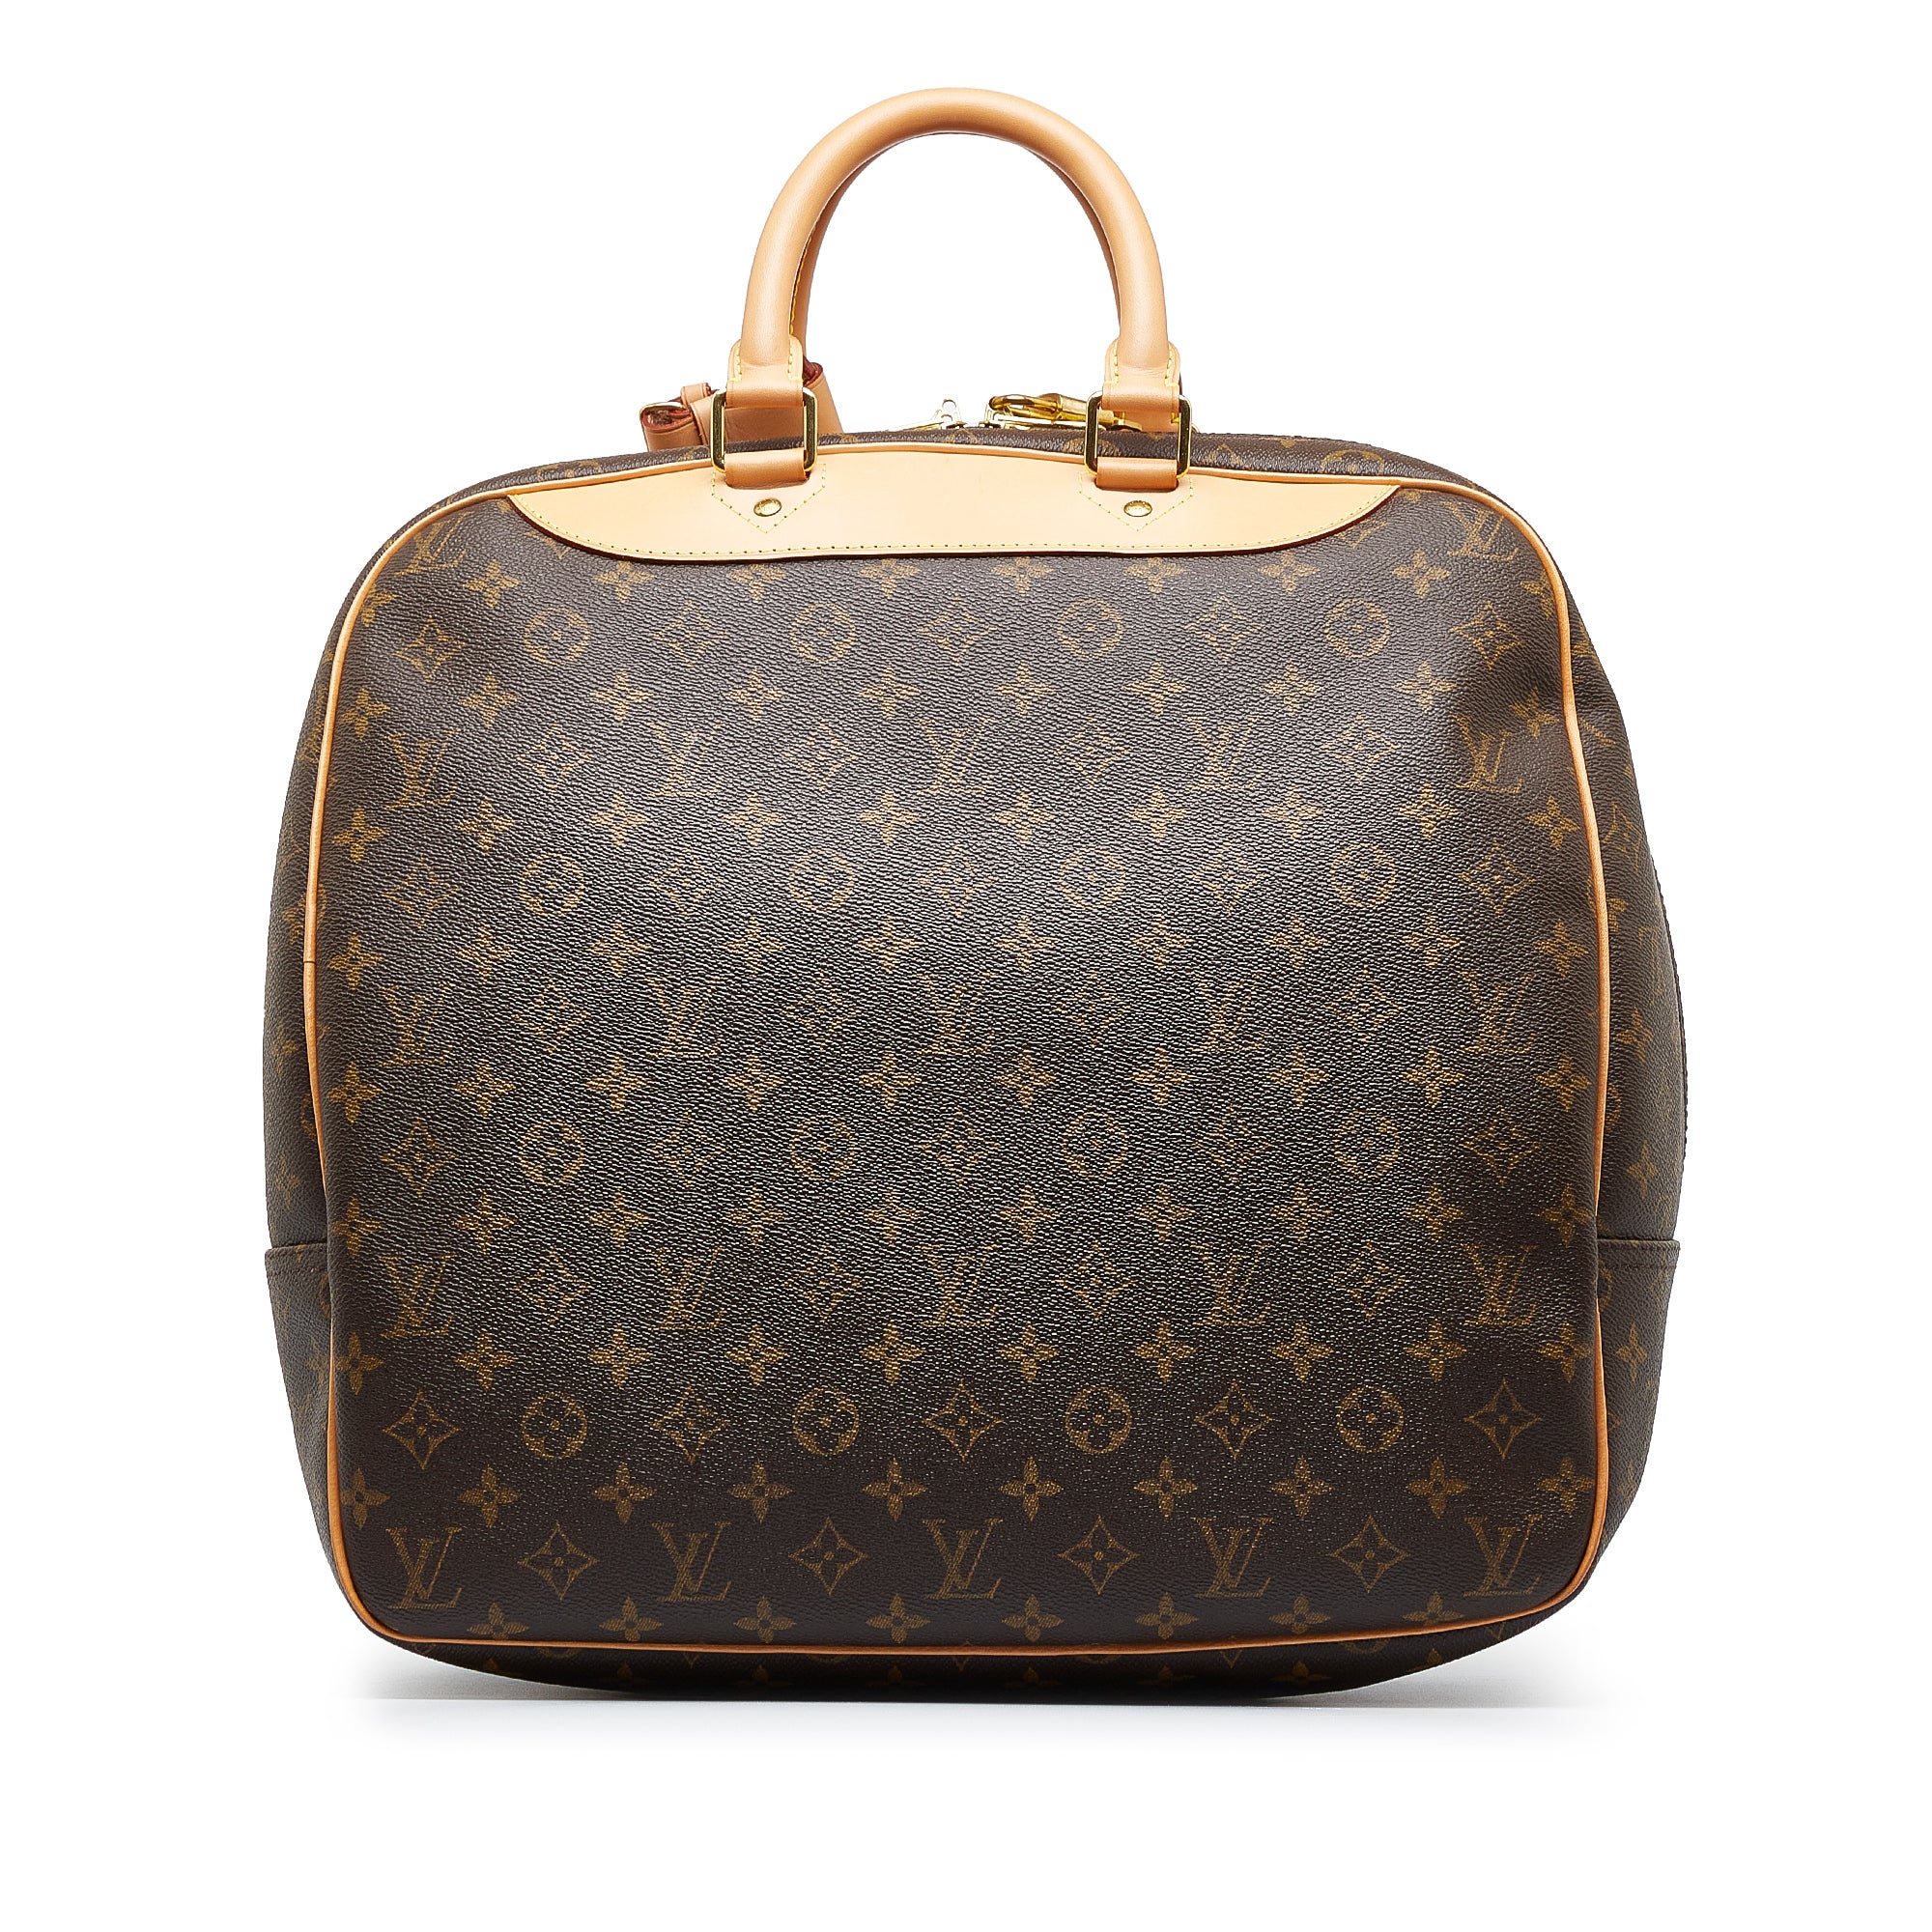 Louis Vuitton Evasion Boston Bag Travel Bag Monogram